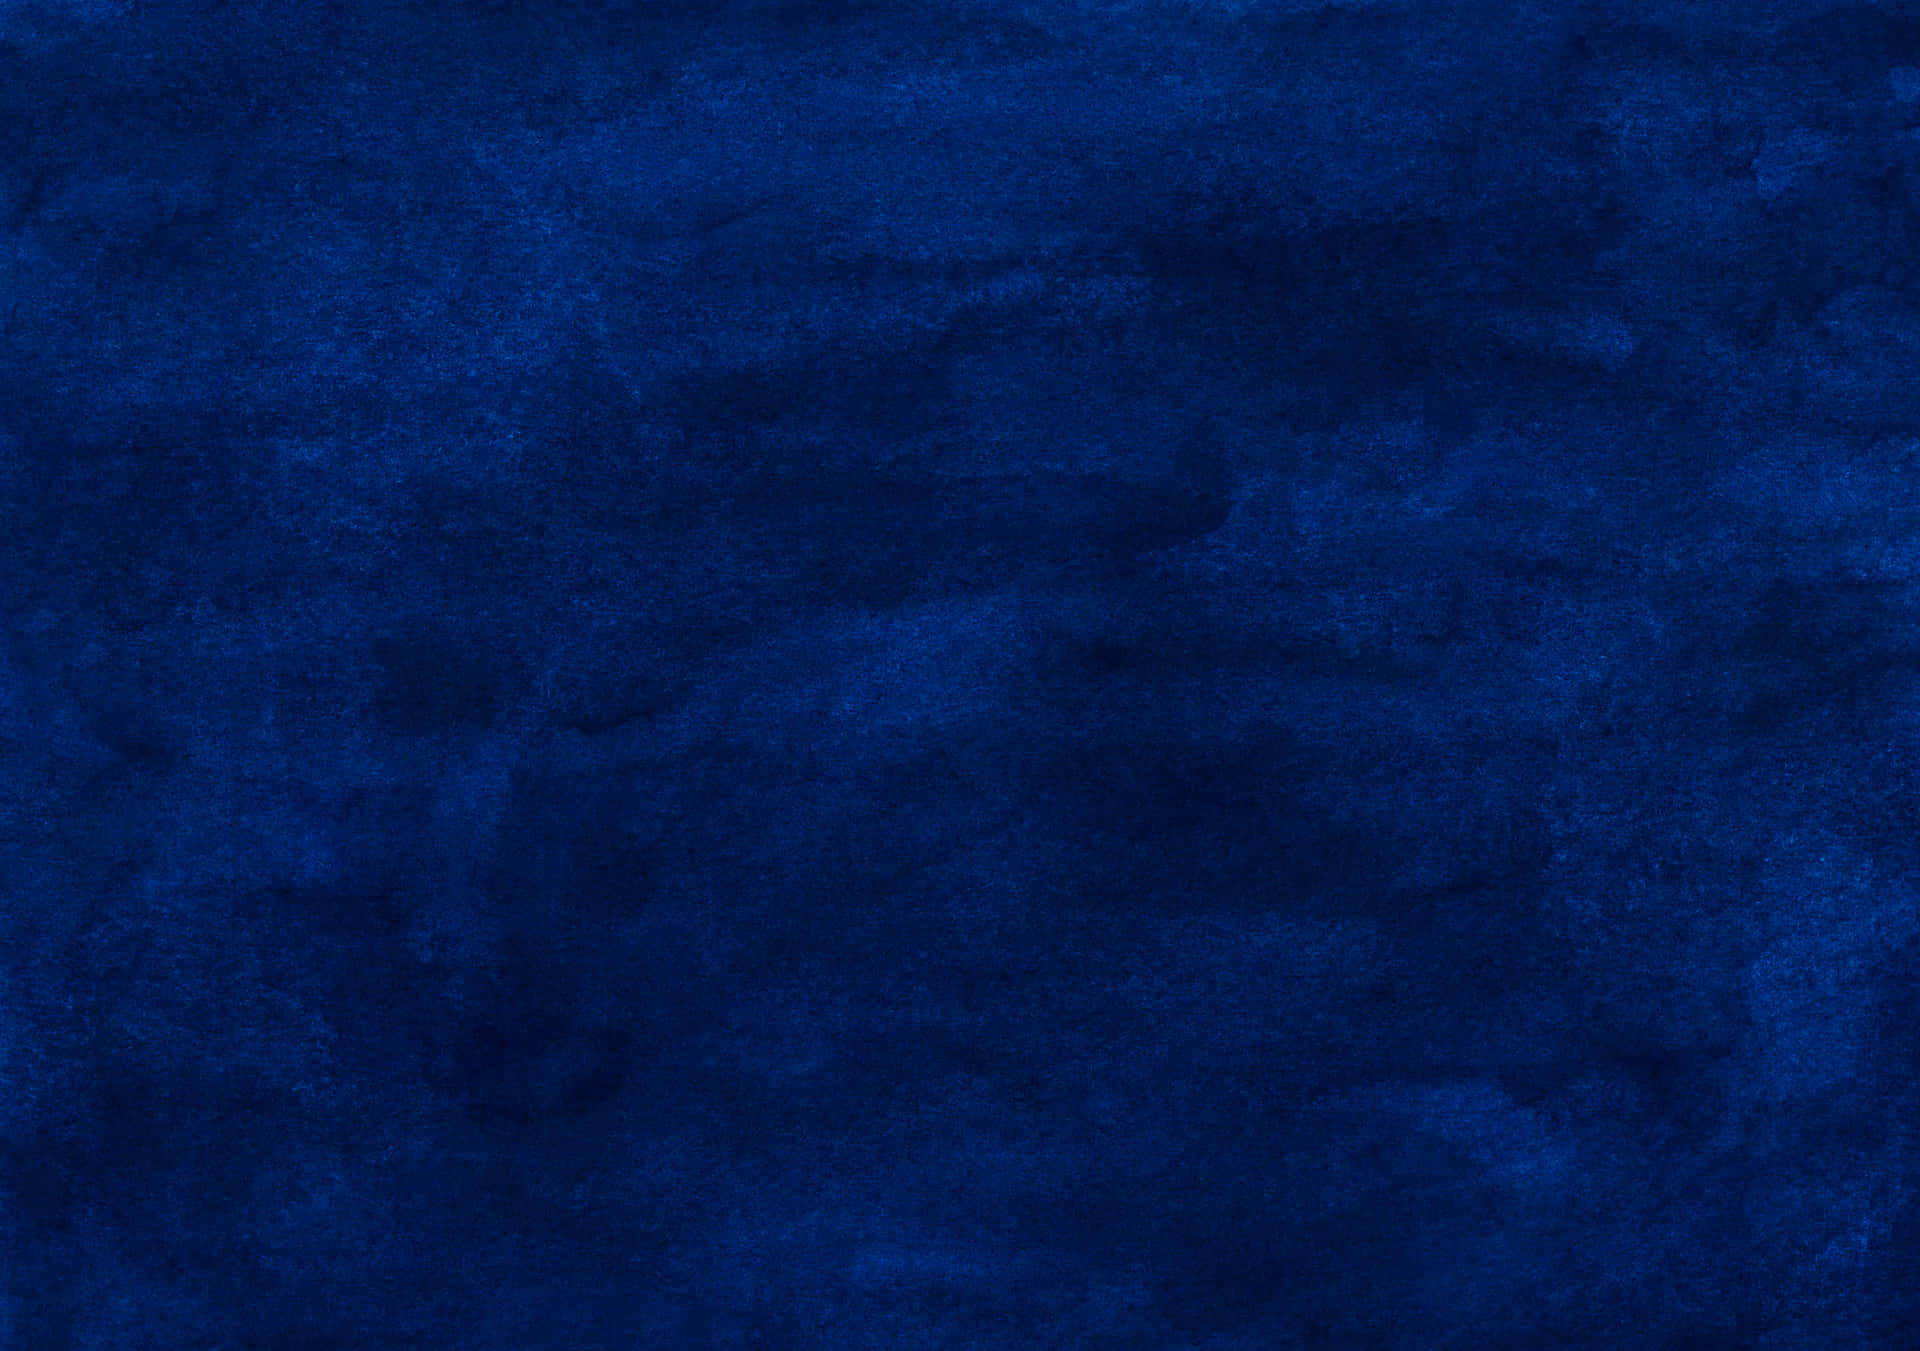 Unsuave Degradado De Azul Oscuro Que Trae Paz Y Equilibrio. Fondo de pantalla